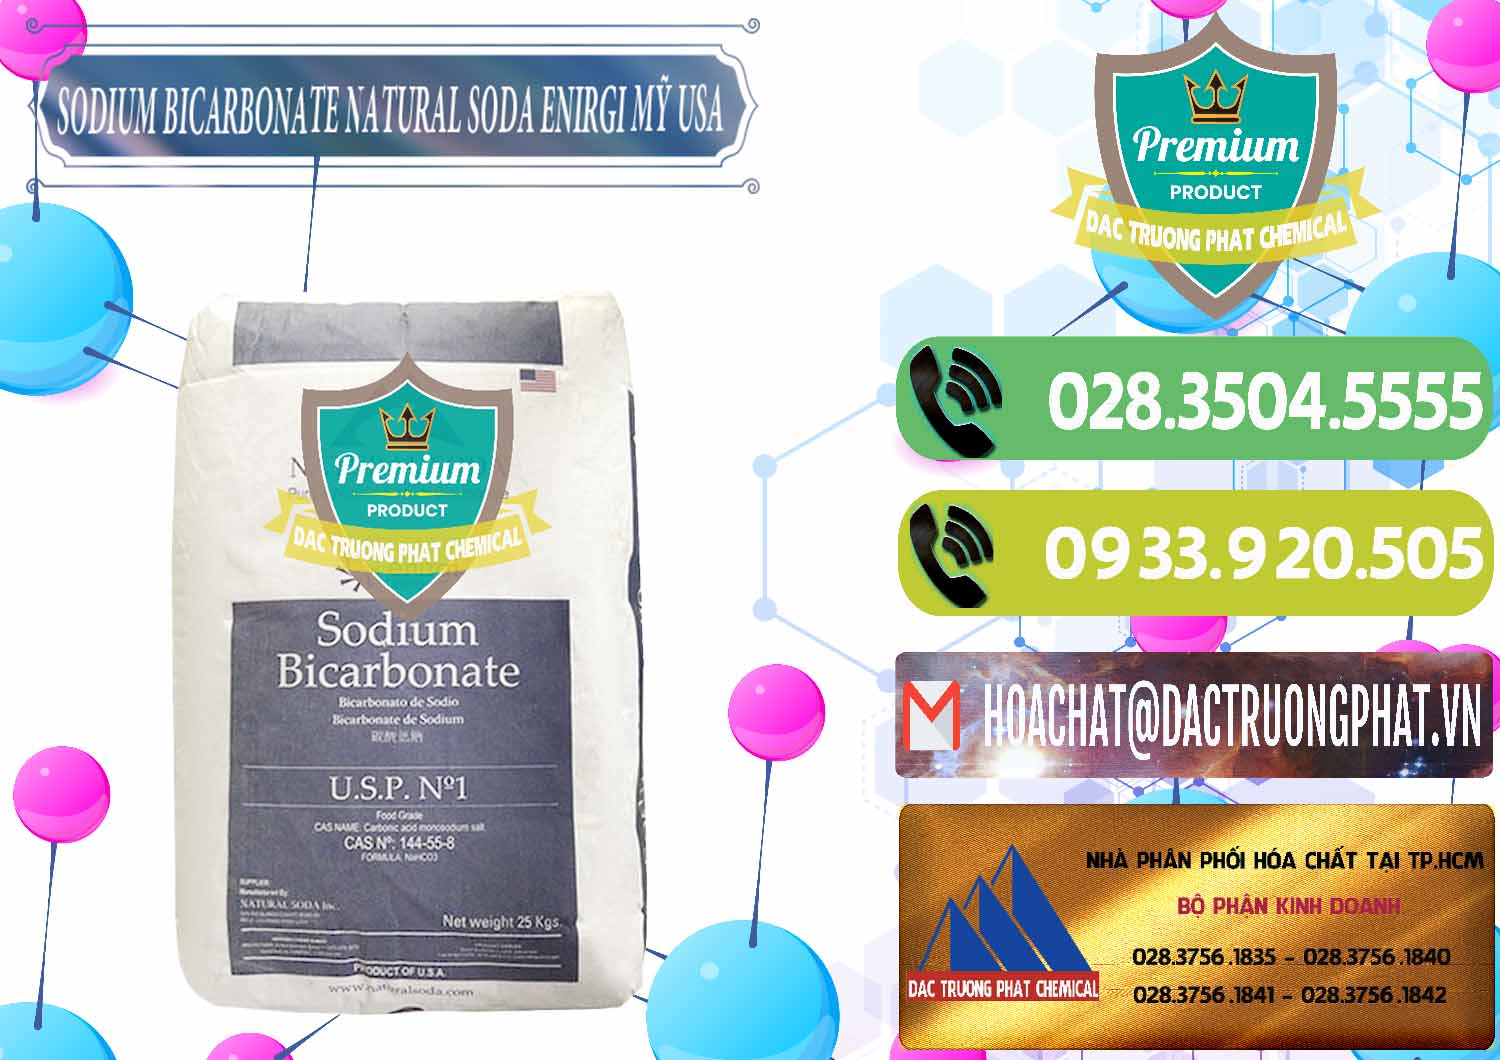 Đơn vị cung cấp & bán Sodium Bicarbonate – Bicar NaHCO3 Food Grade Natural Soda Enirgi Mỹ USA - 0257 - Nhà cung cấp ( phân phối ) hóa chất tại TP.HCM - hoachatmientay.vn